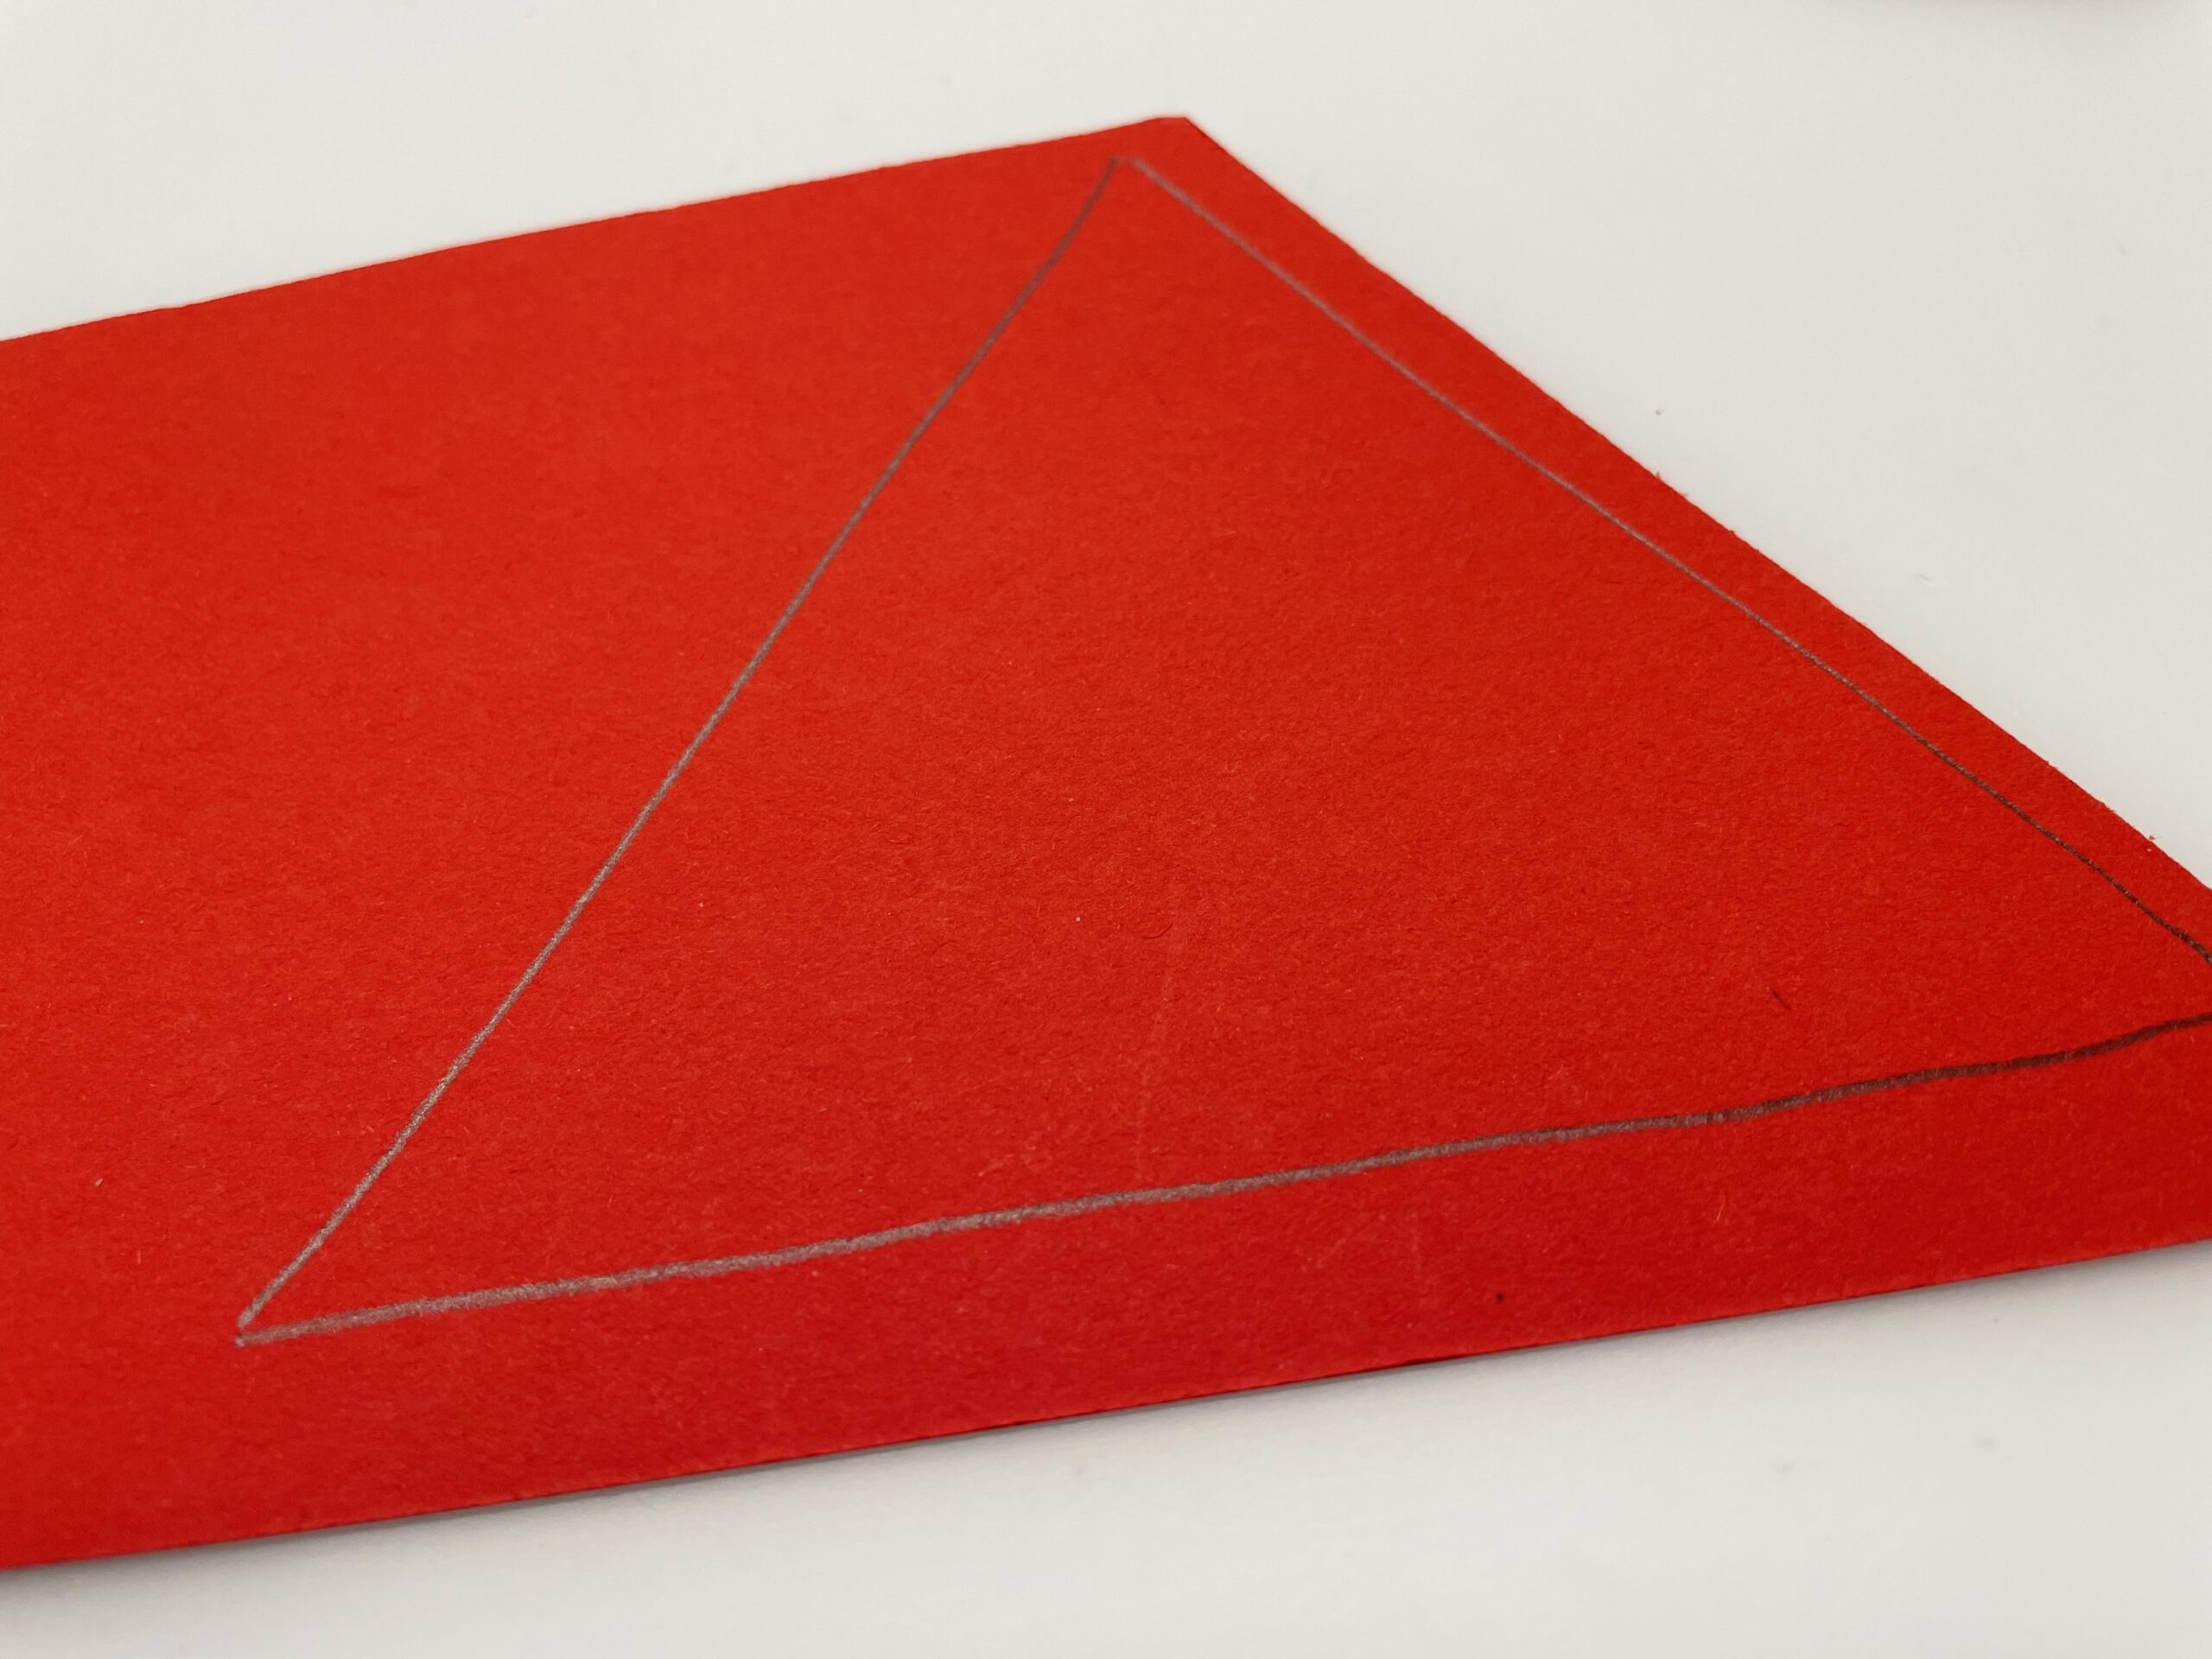 Bild zum Schritt 6 für die Kinder-Beschäftigung: 'Dafür malt ihr ein Dreieck auf rotes, braunes oder graues...'